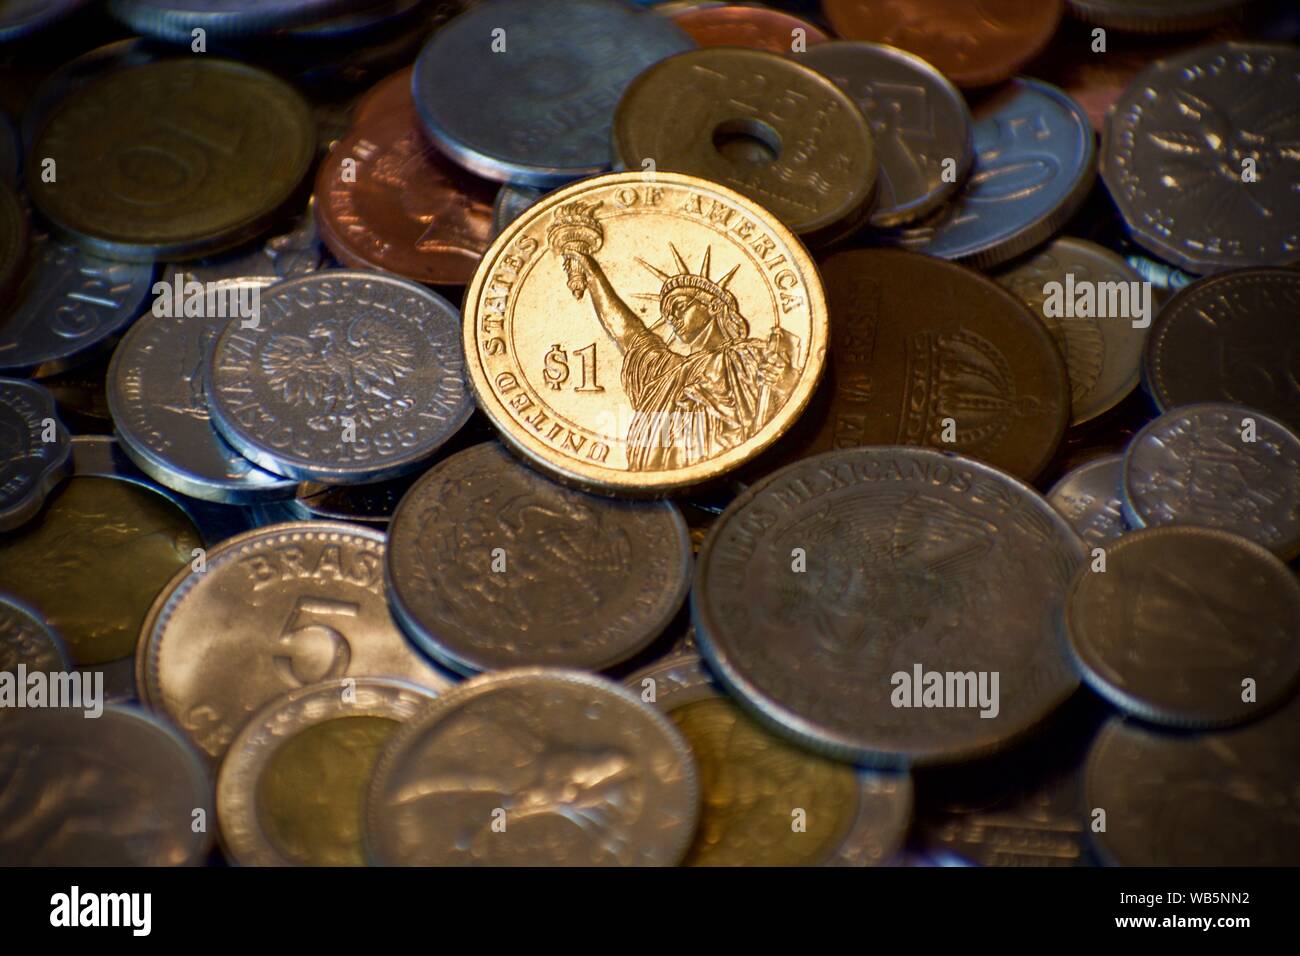 American Gold Dollar scheint auf der Oberseite des Haufens von stumpfen Münzen aus anderen Nationen. Starke Wirtschaft inmitten Handelskriege. Stockfoto